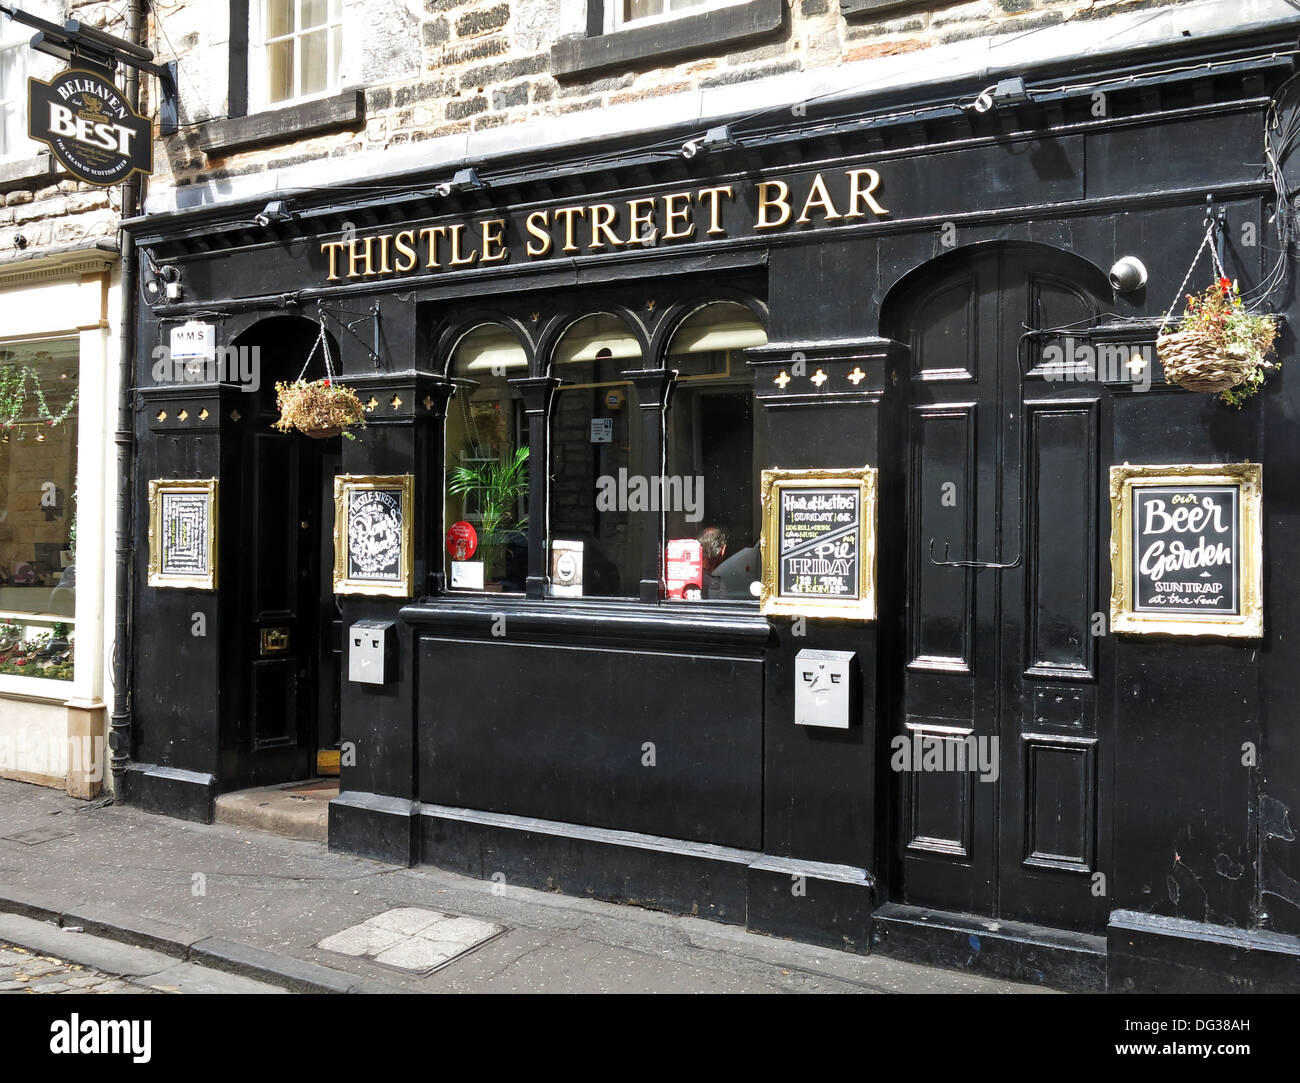 Das Thistle St Bar in Edinburgh - traditionelle Stadtzentrum schottischen Bellhaven Brauereiwirtschaft Schottland, UK Stockfoto